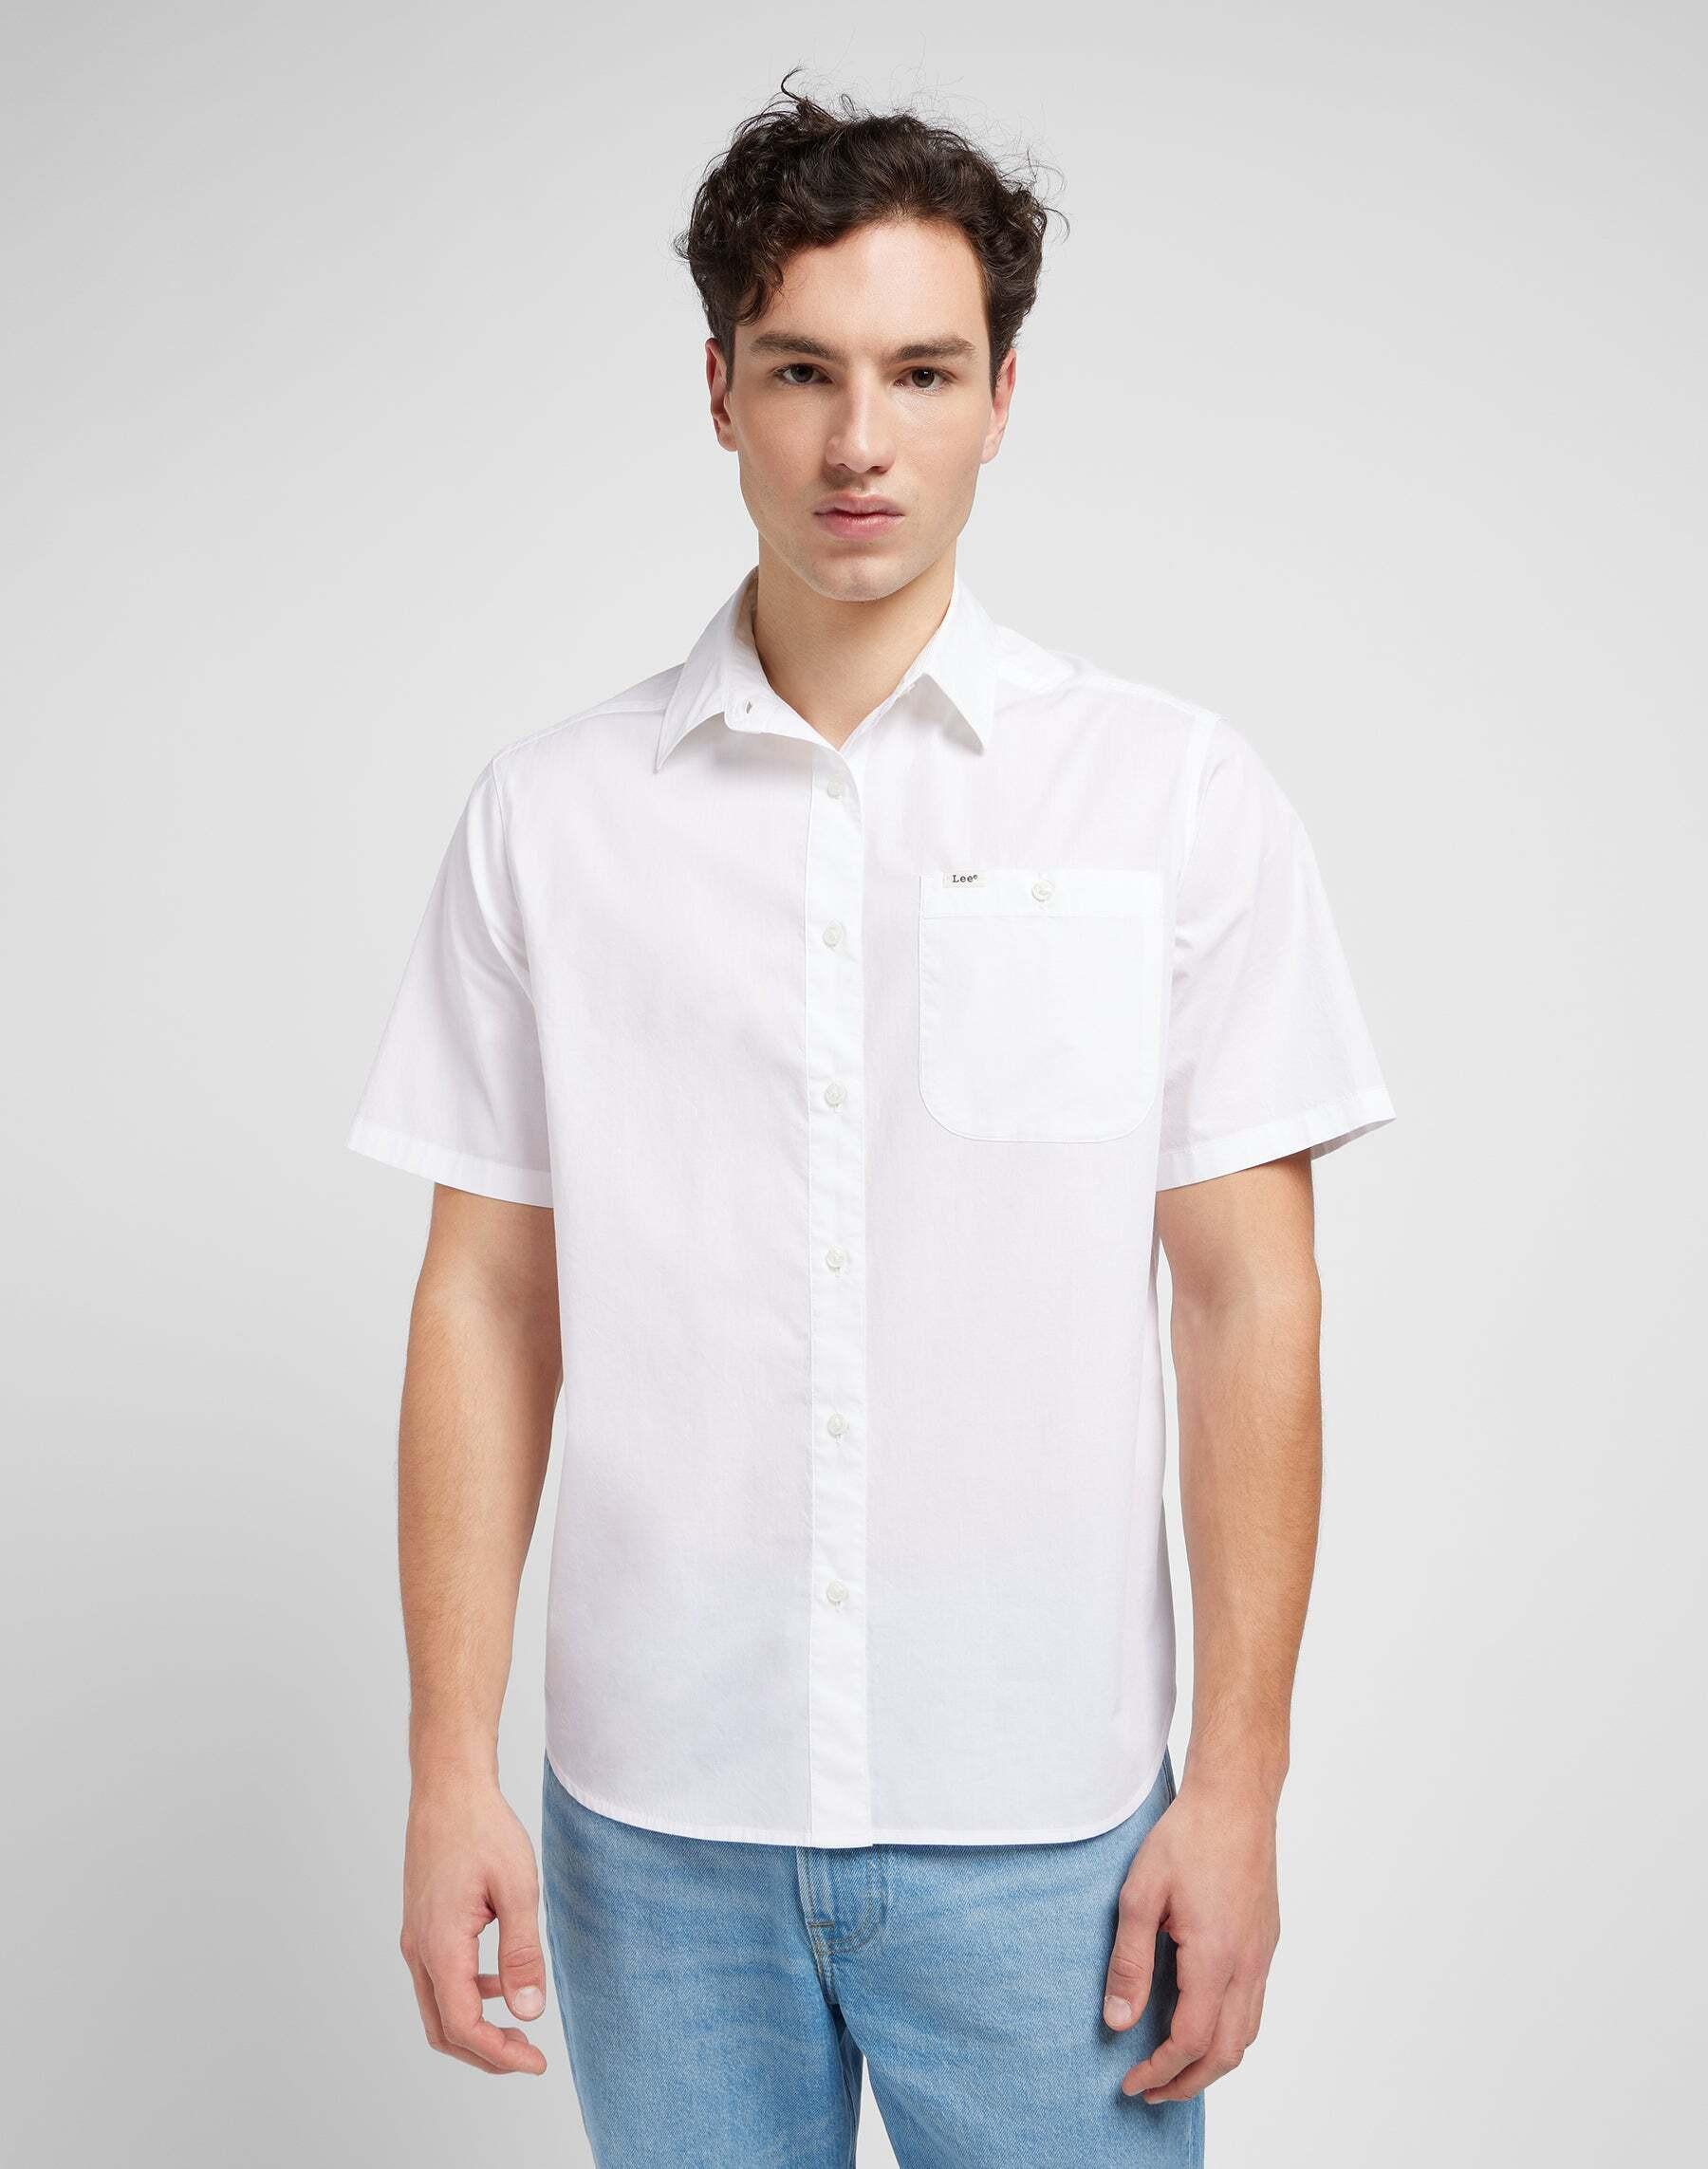 Hemden Patch Shirt Herren Weiss XL von Lee